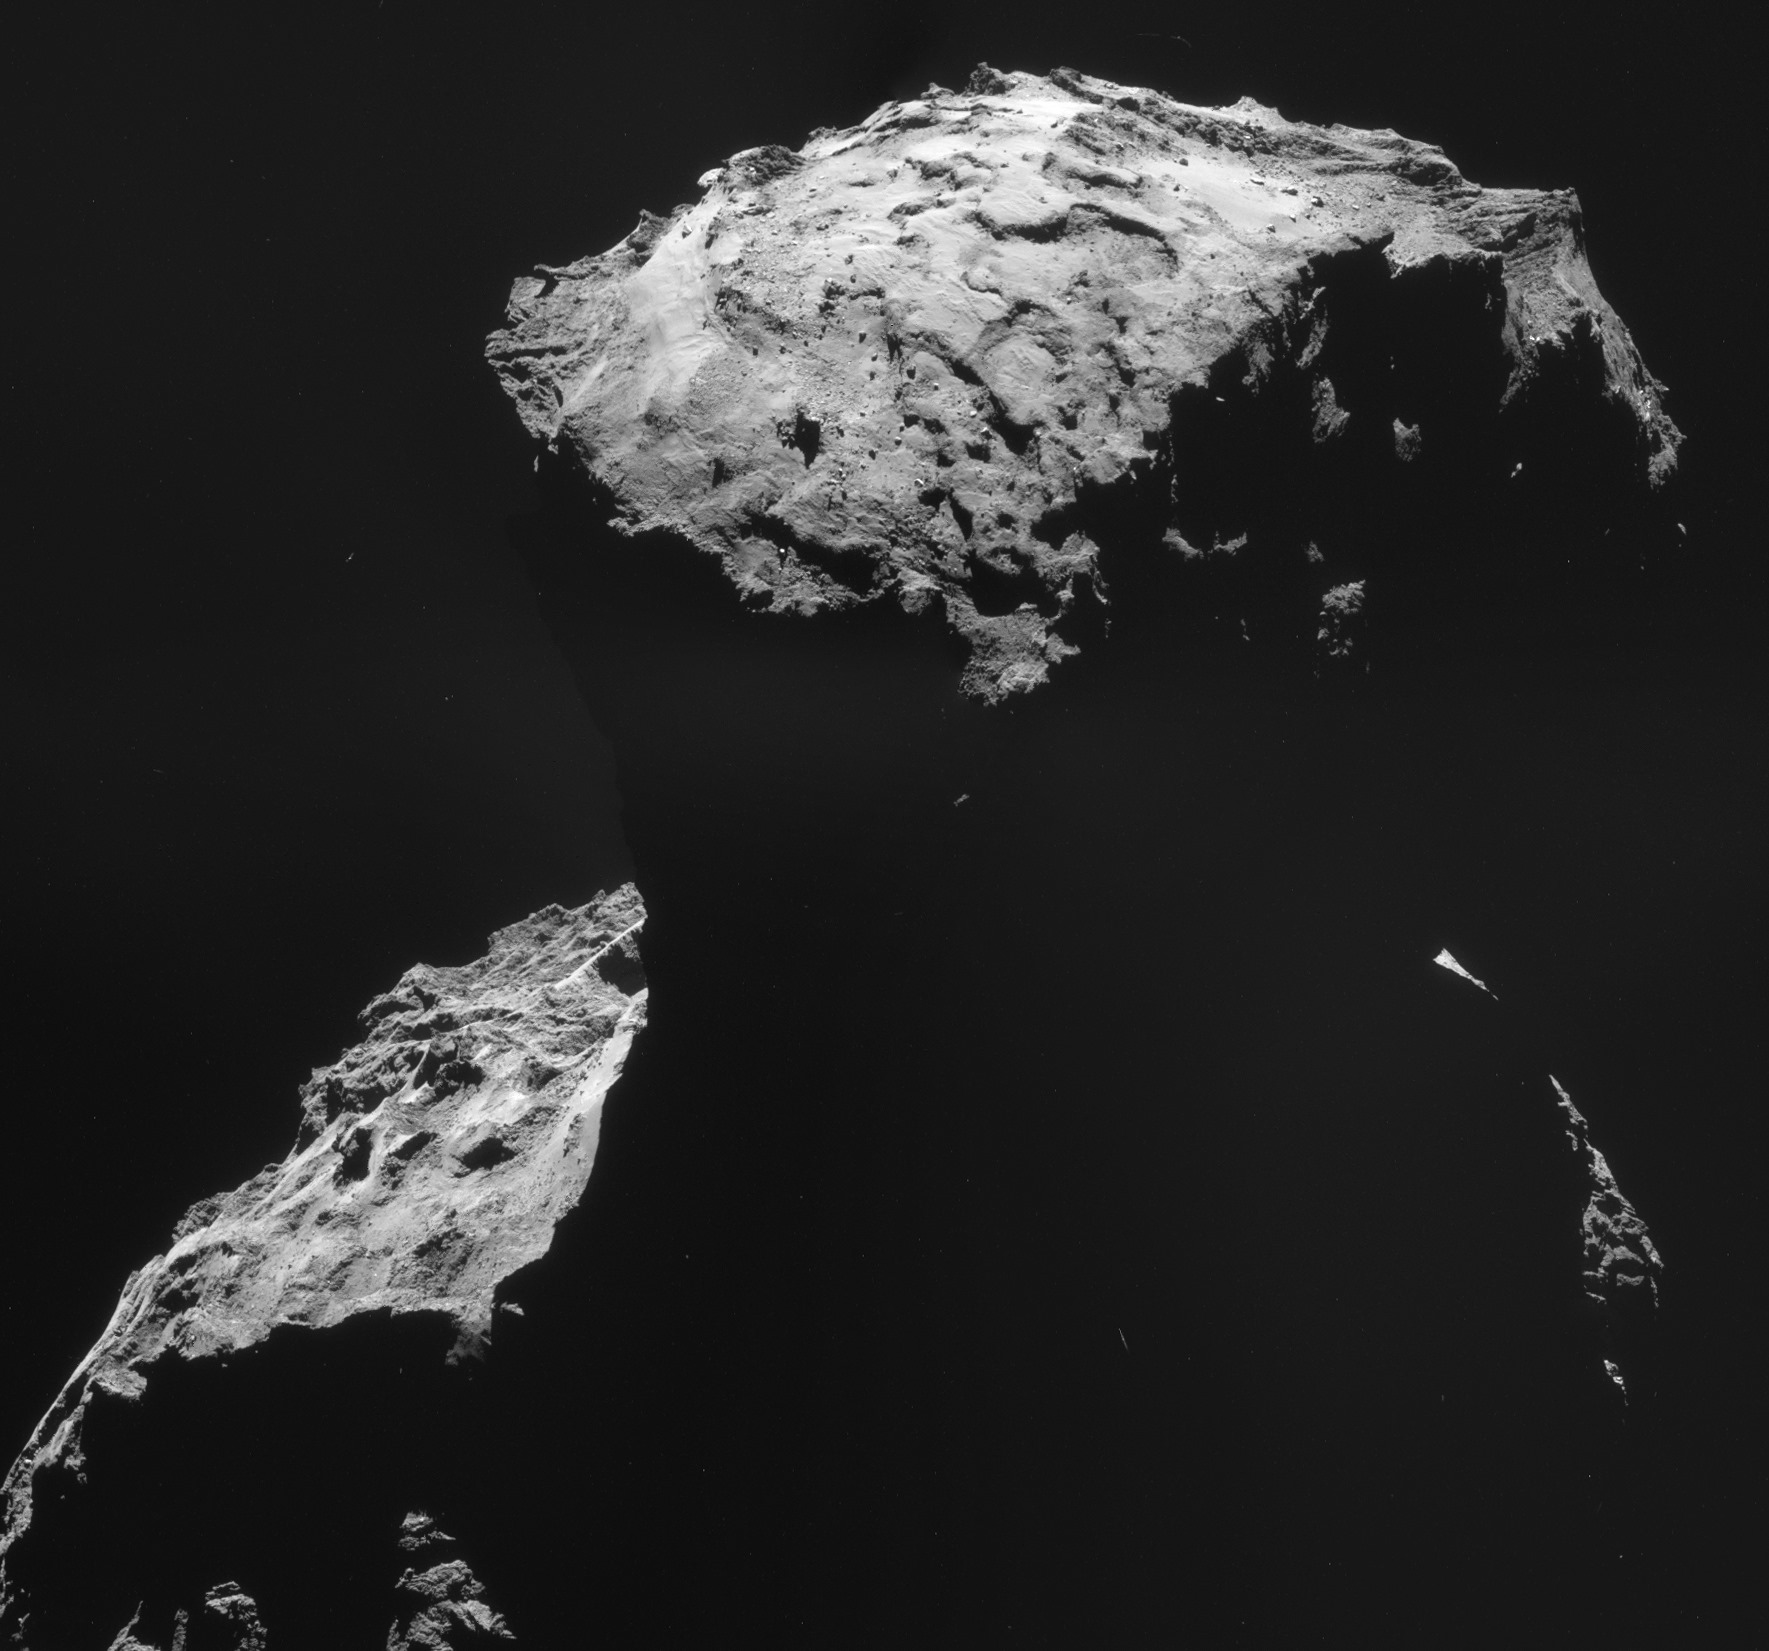 Sur l’origine du nouveau nom attribué au site d’atterrissage de la sonde Rosetta sur son gros canard en plastique